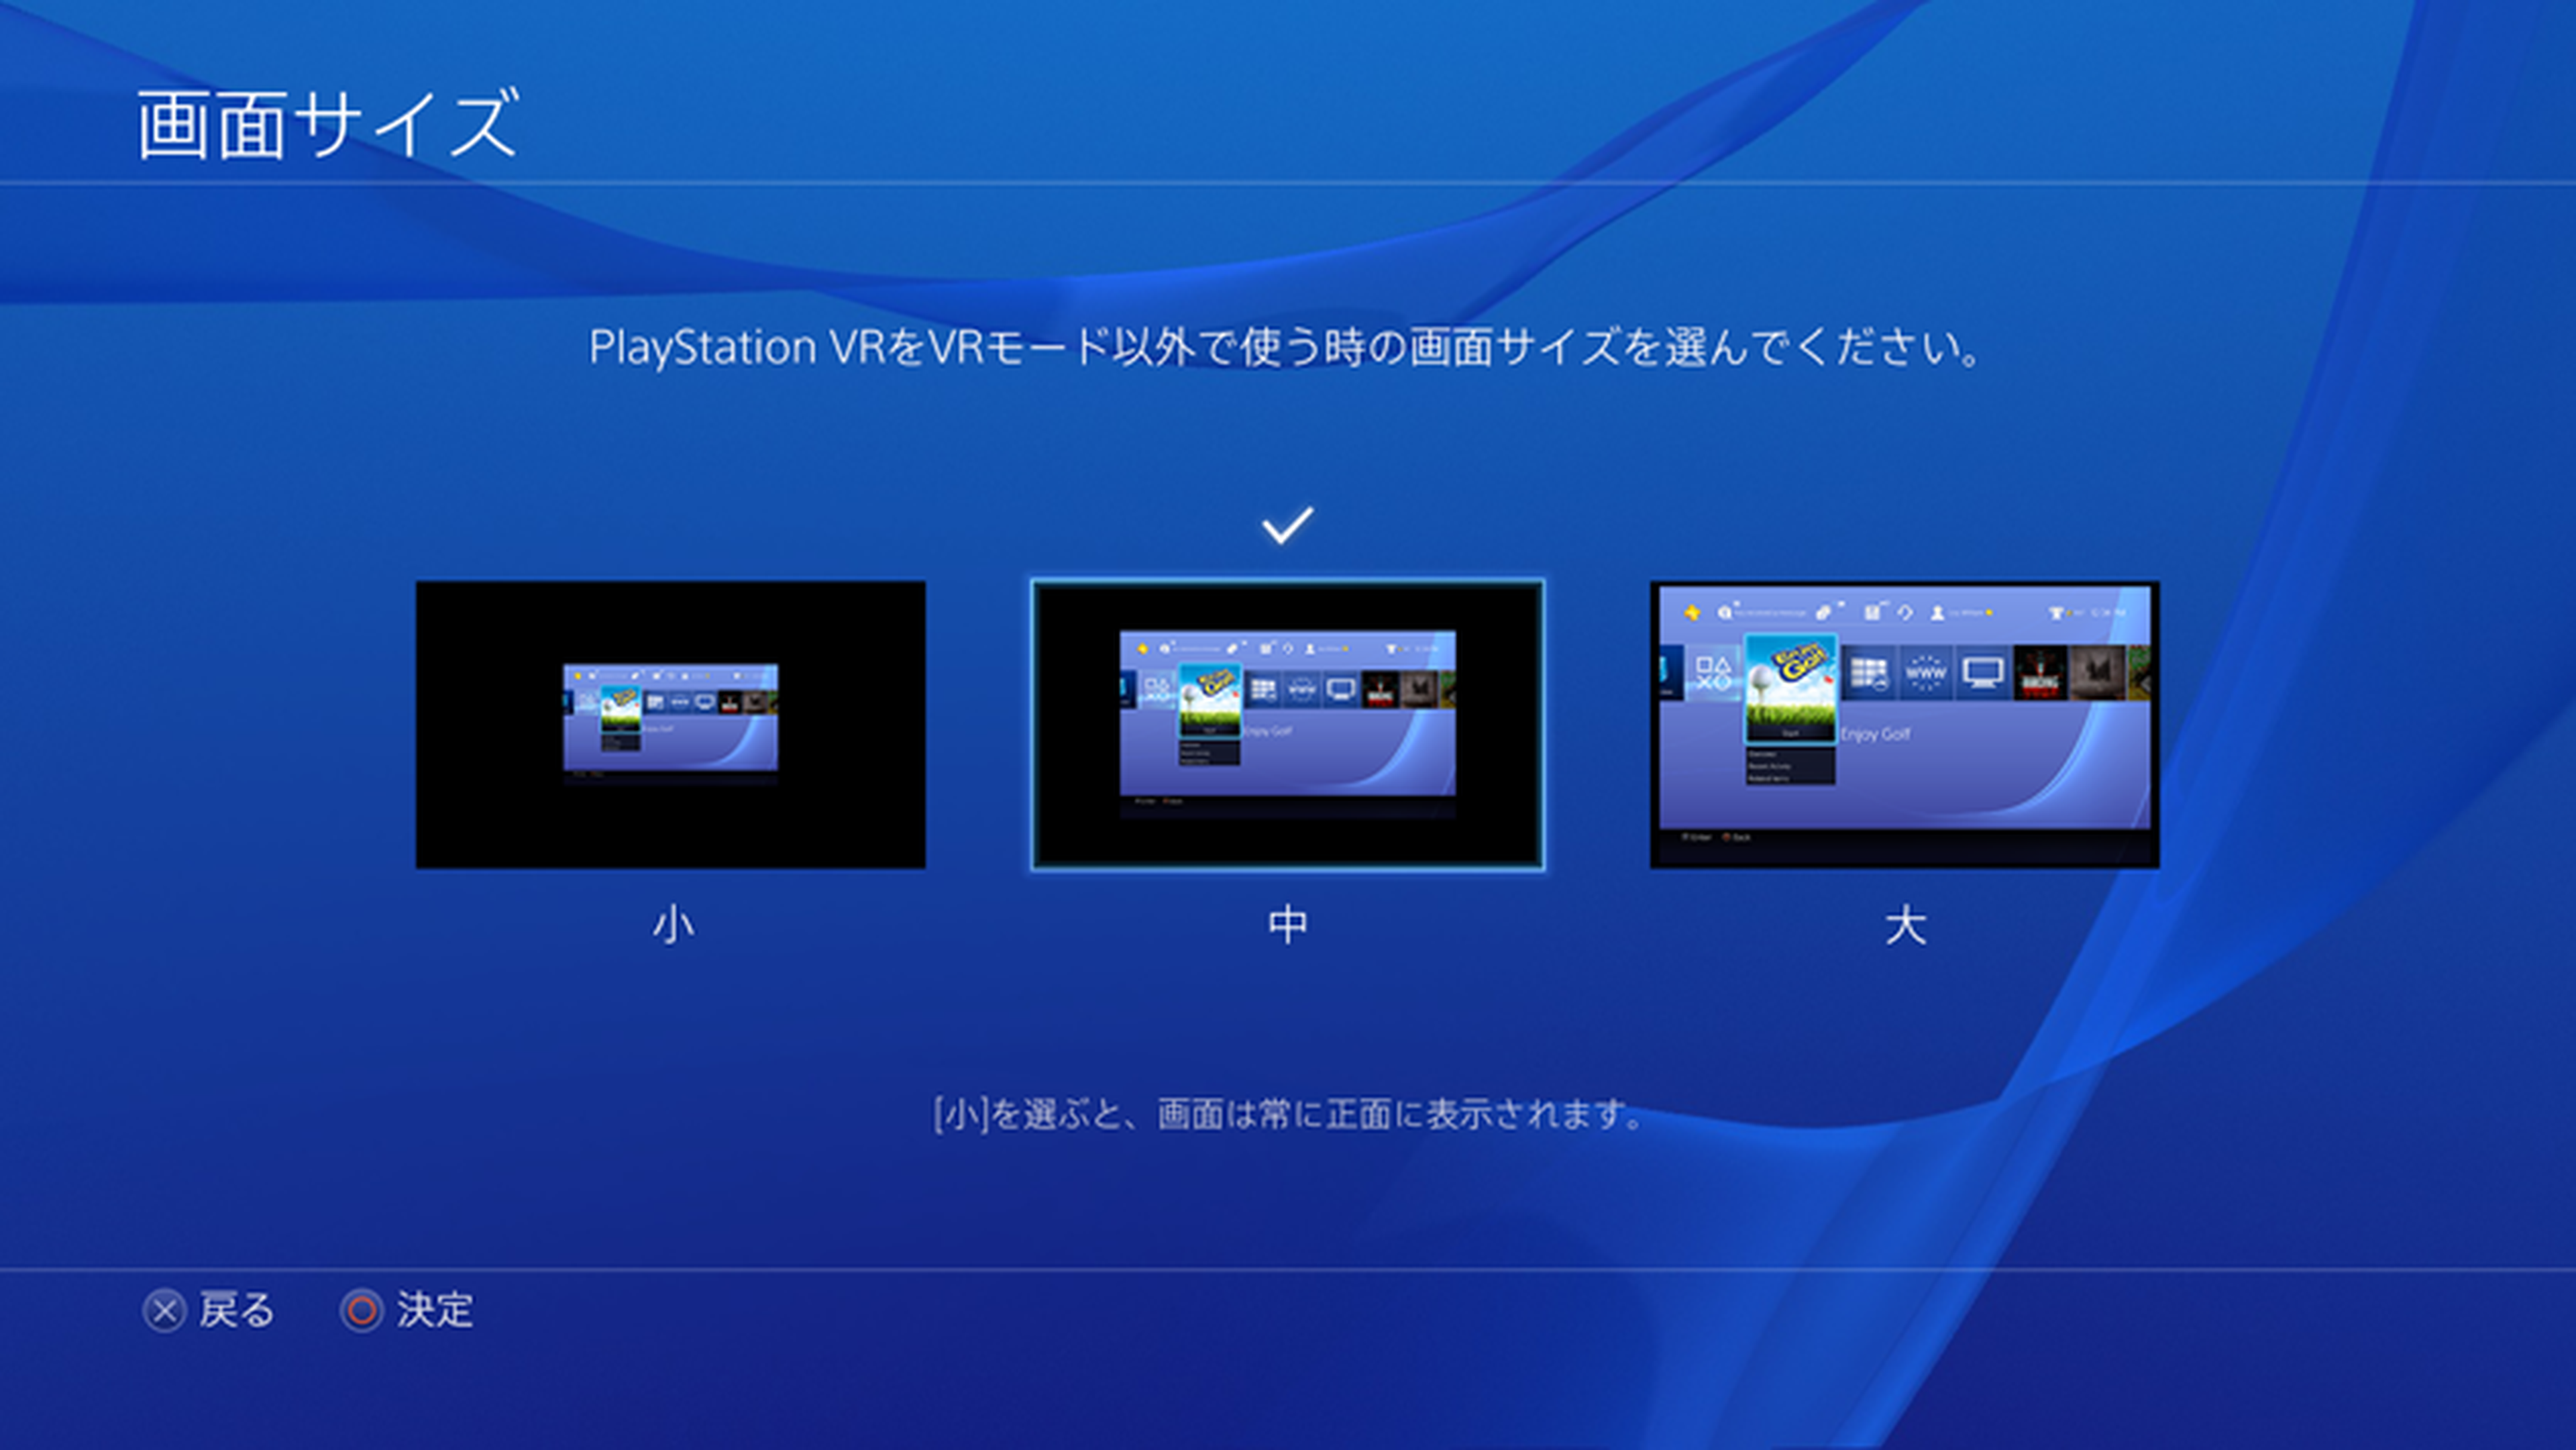 PlayStation VR modo cinematico